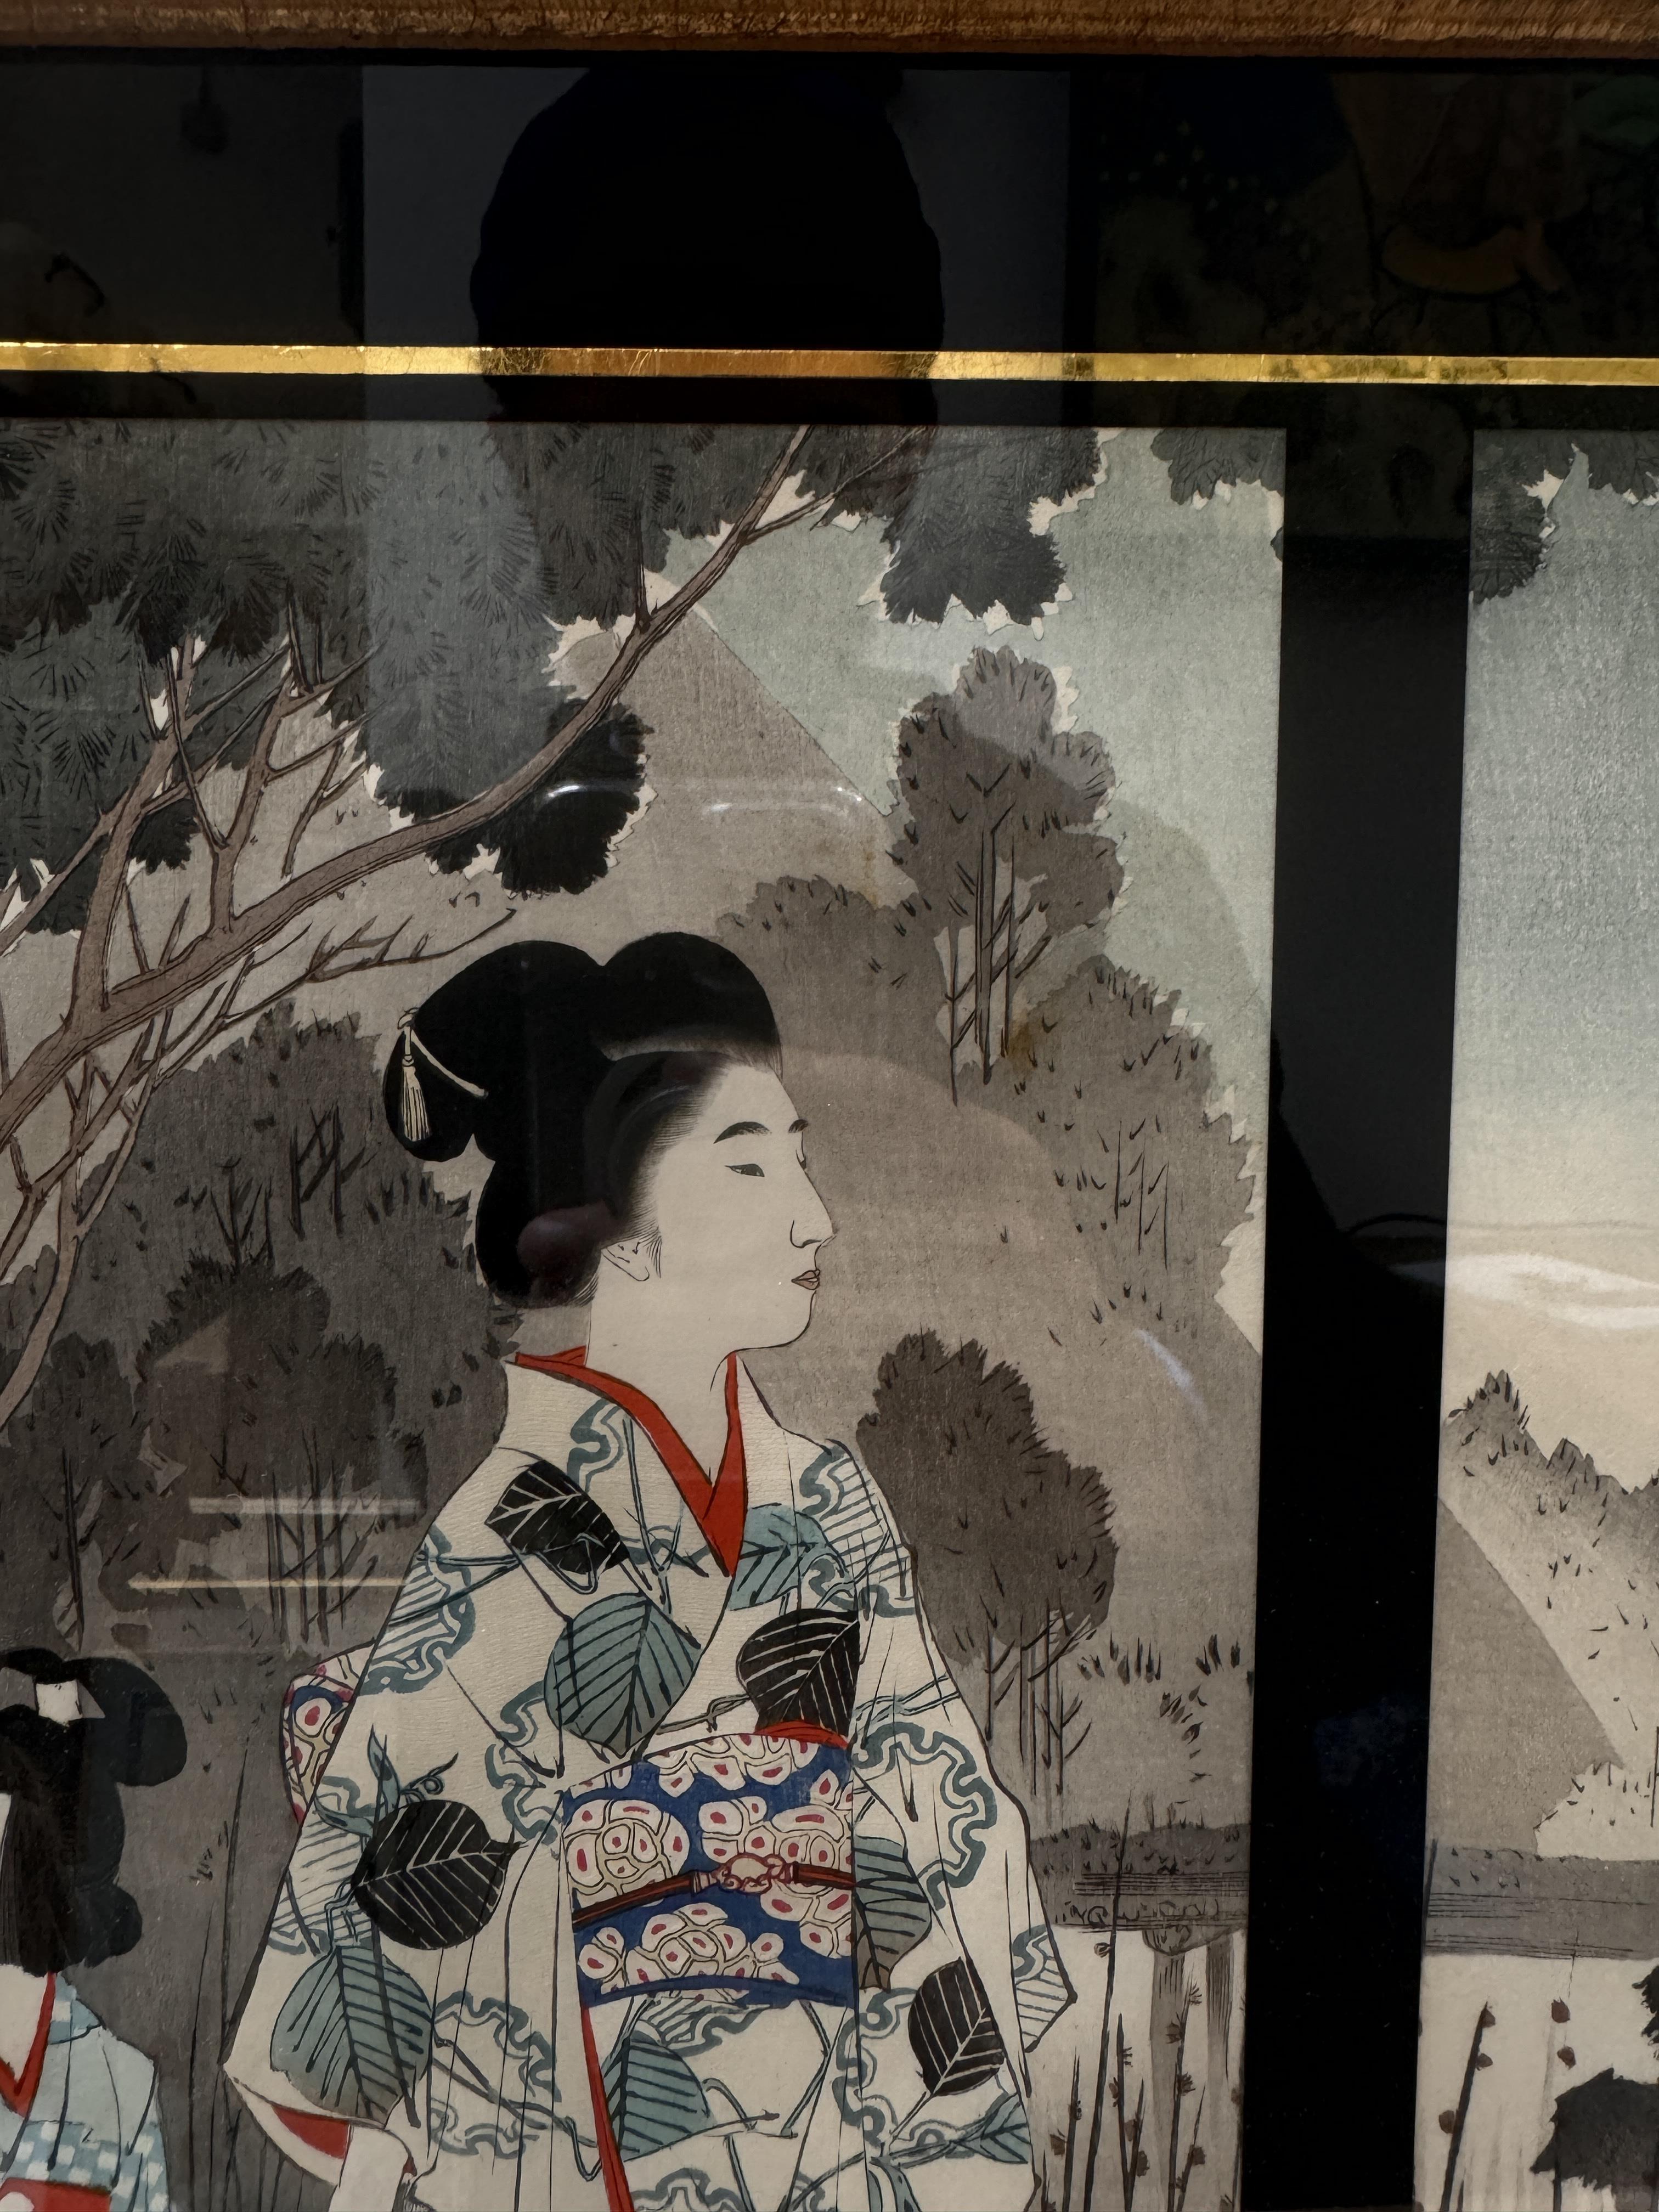 TSUKIOKA YOSHITOSHI (1797 – 1858), MIYAGAWA SHUNTEI (1873 – 1914) Two Japanese woodblock print tript - Image 23 of 23